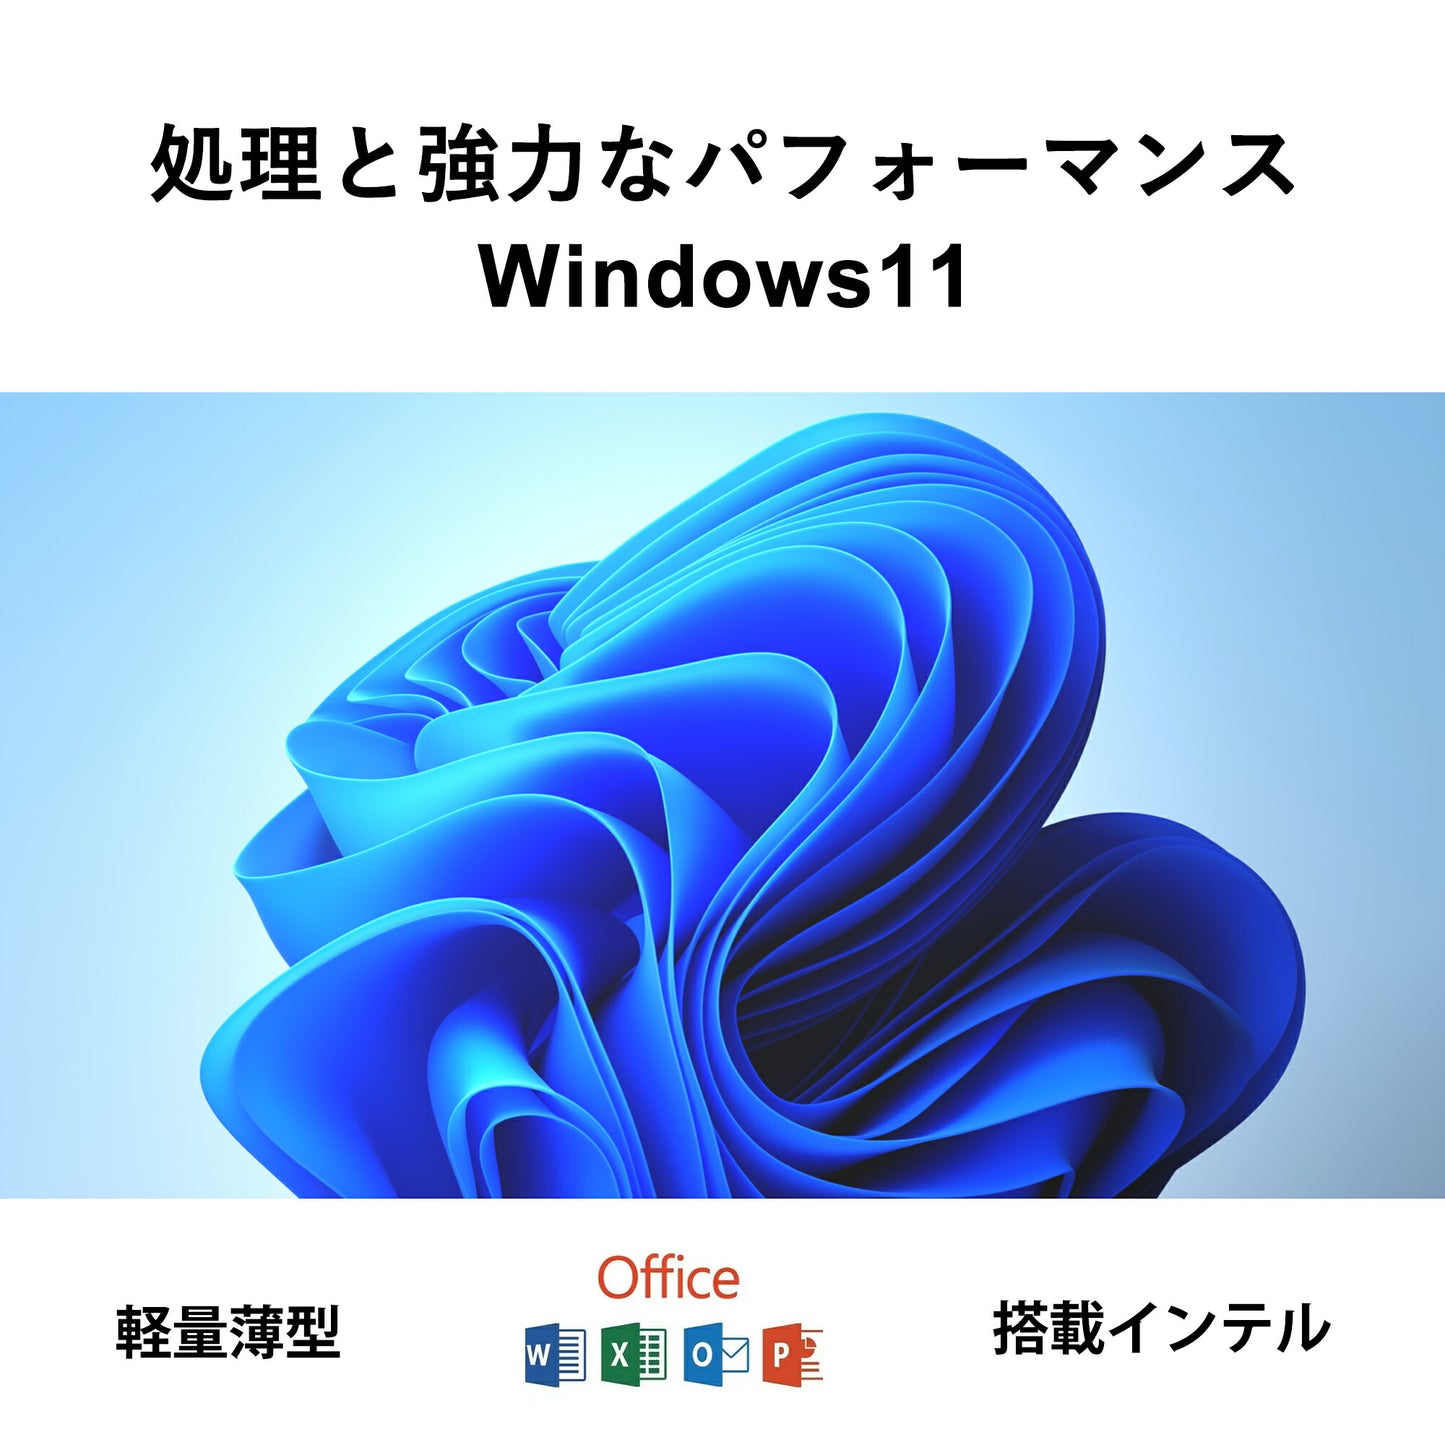 公式限定価格《VETESA 15.6型 新品ノートPC》Office付き Windows11 Celeron N95 メモリ16GB SSD512GB テンキー付き(15Q7-US-w11)